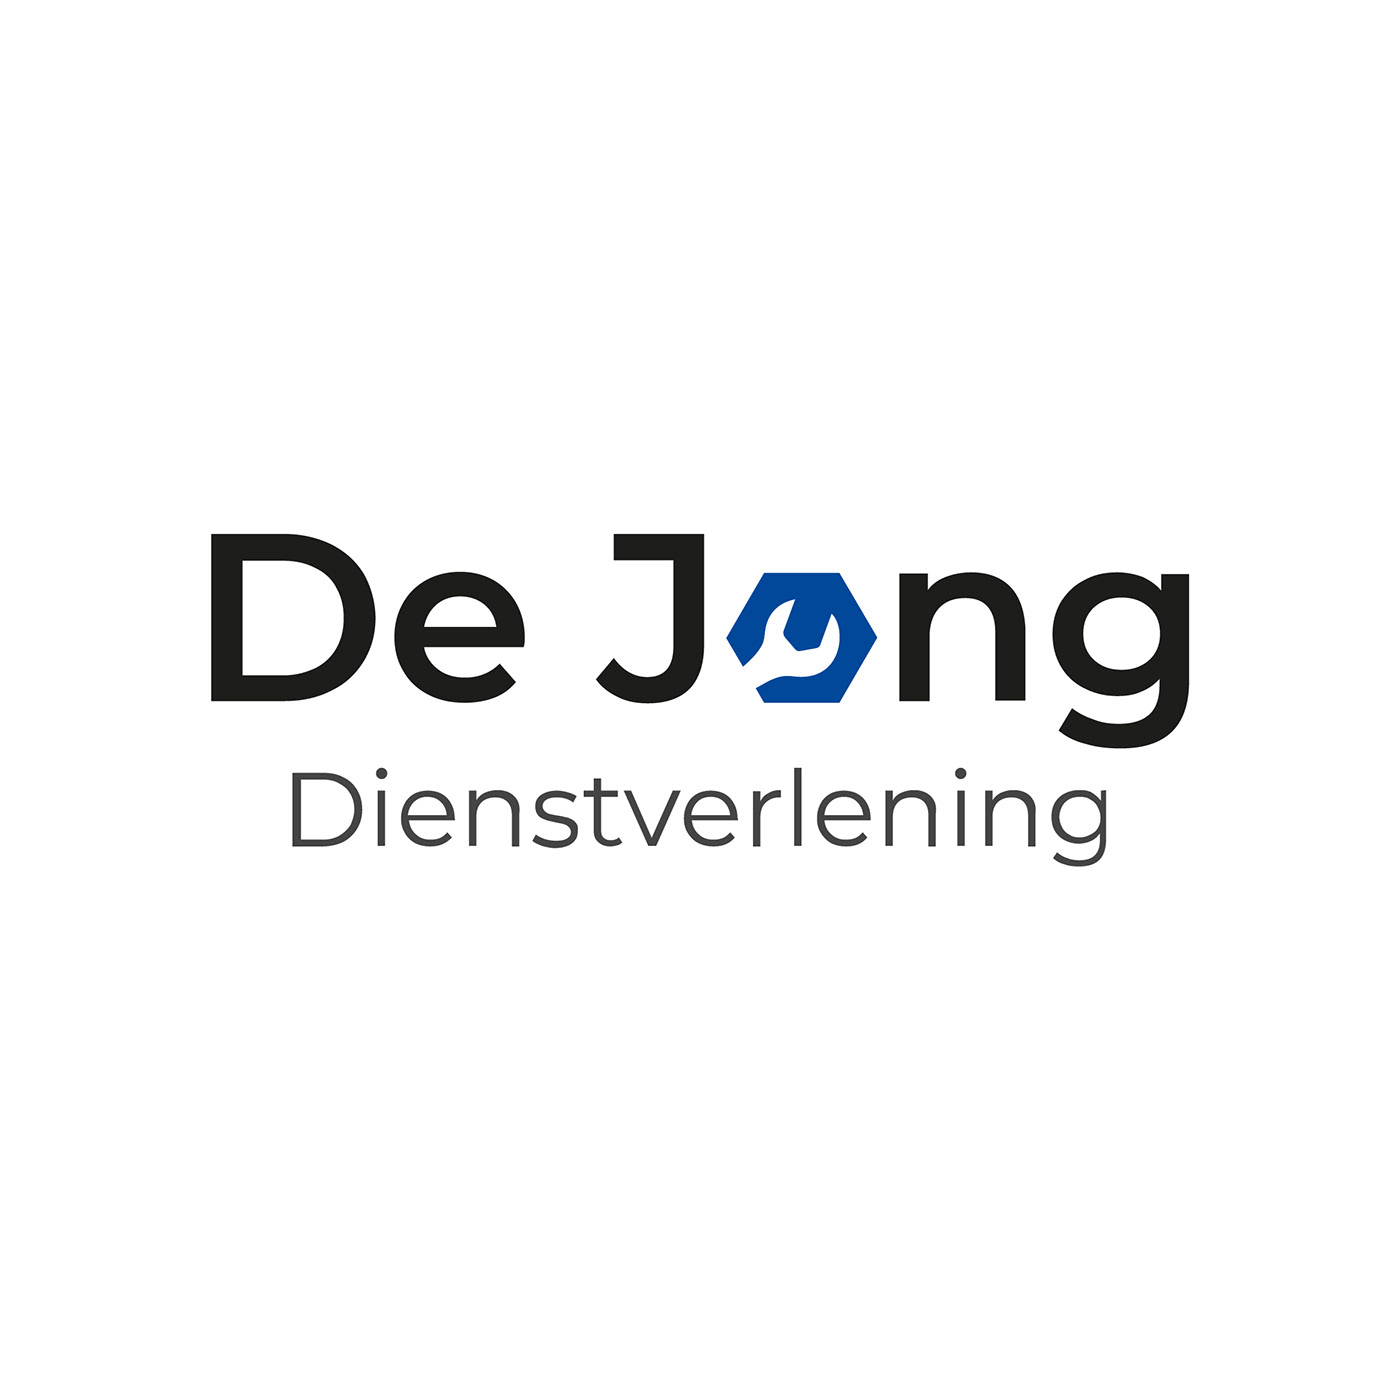 De Jong Dienstverlening grafisch ontwerp logo techniek